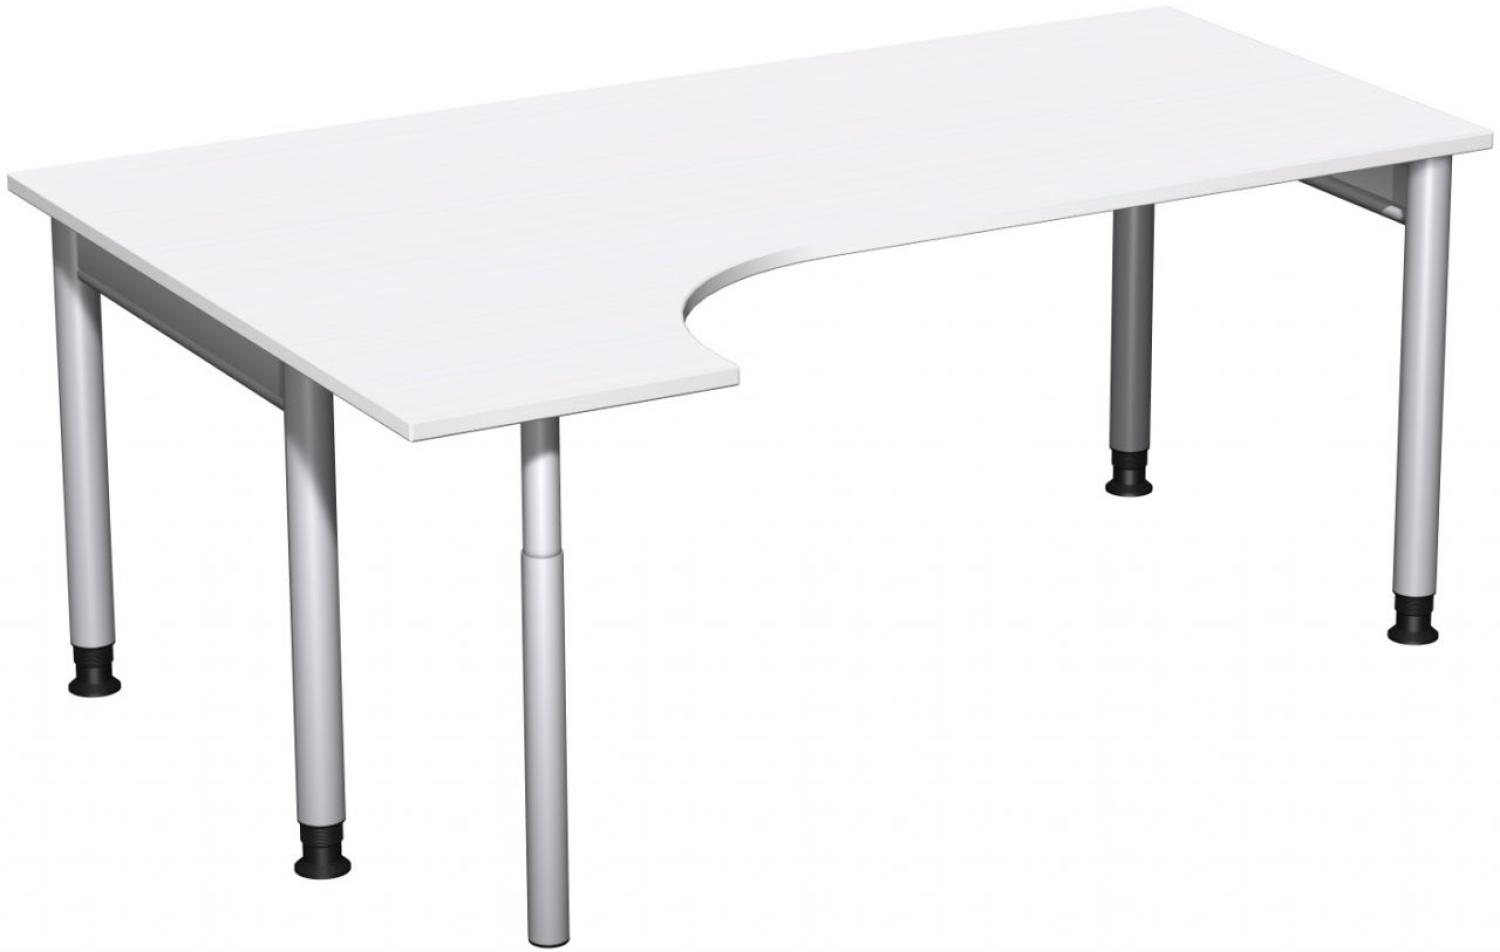 PC-Schreibtisch '4 Fuß Pro' links, höhenverstellbar, 180x120cm, Weiß / Silber Bild 1